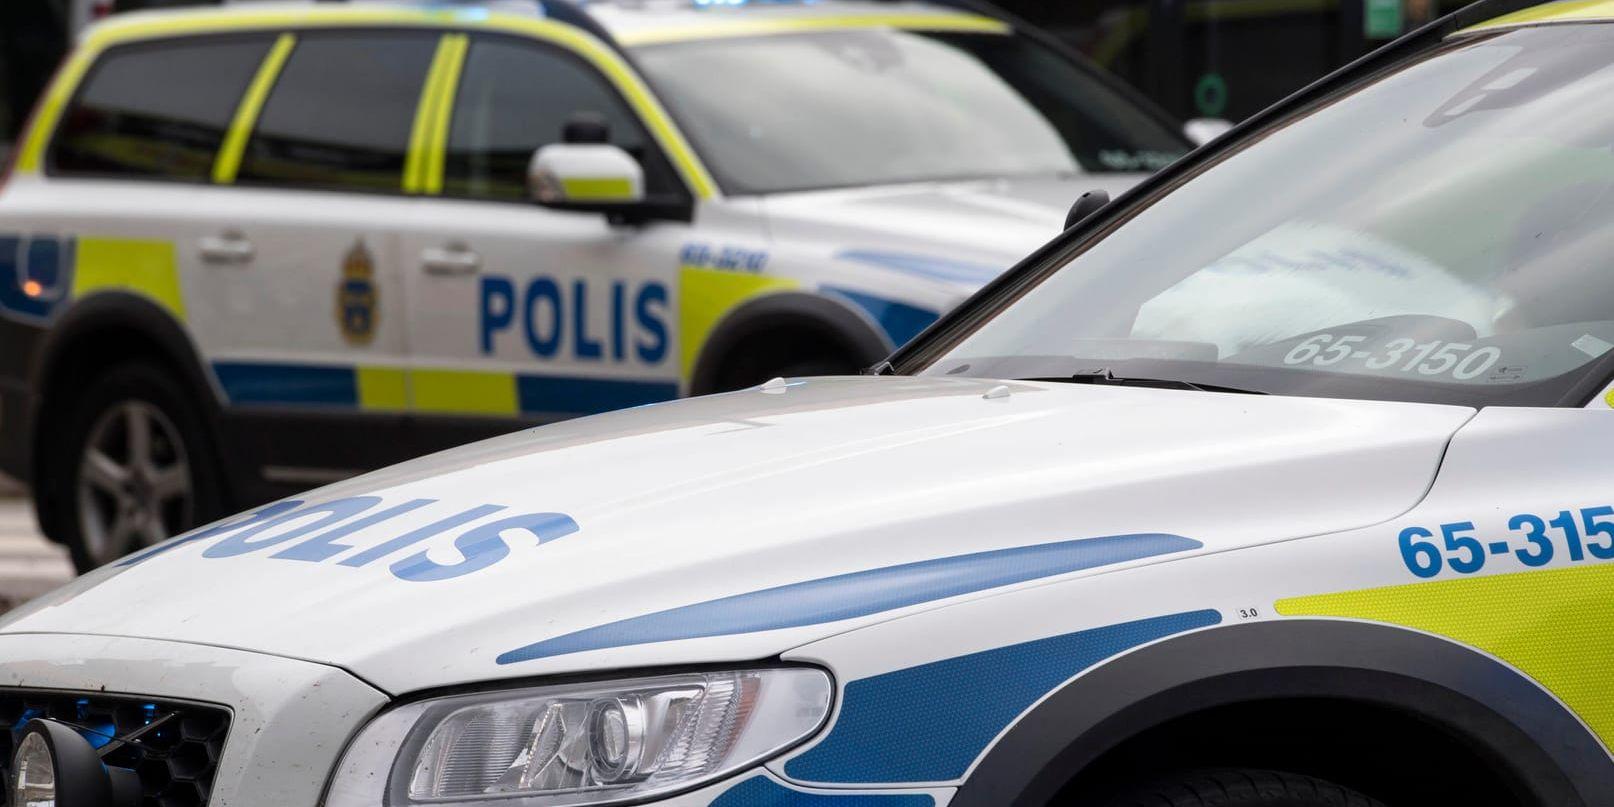 Polisen utreder en skottlossning i stadsdelen Östra gärdet i Falkenberg. Arkivbild.